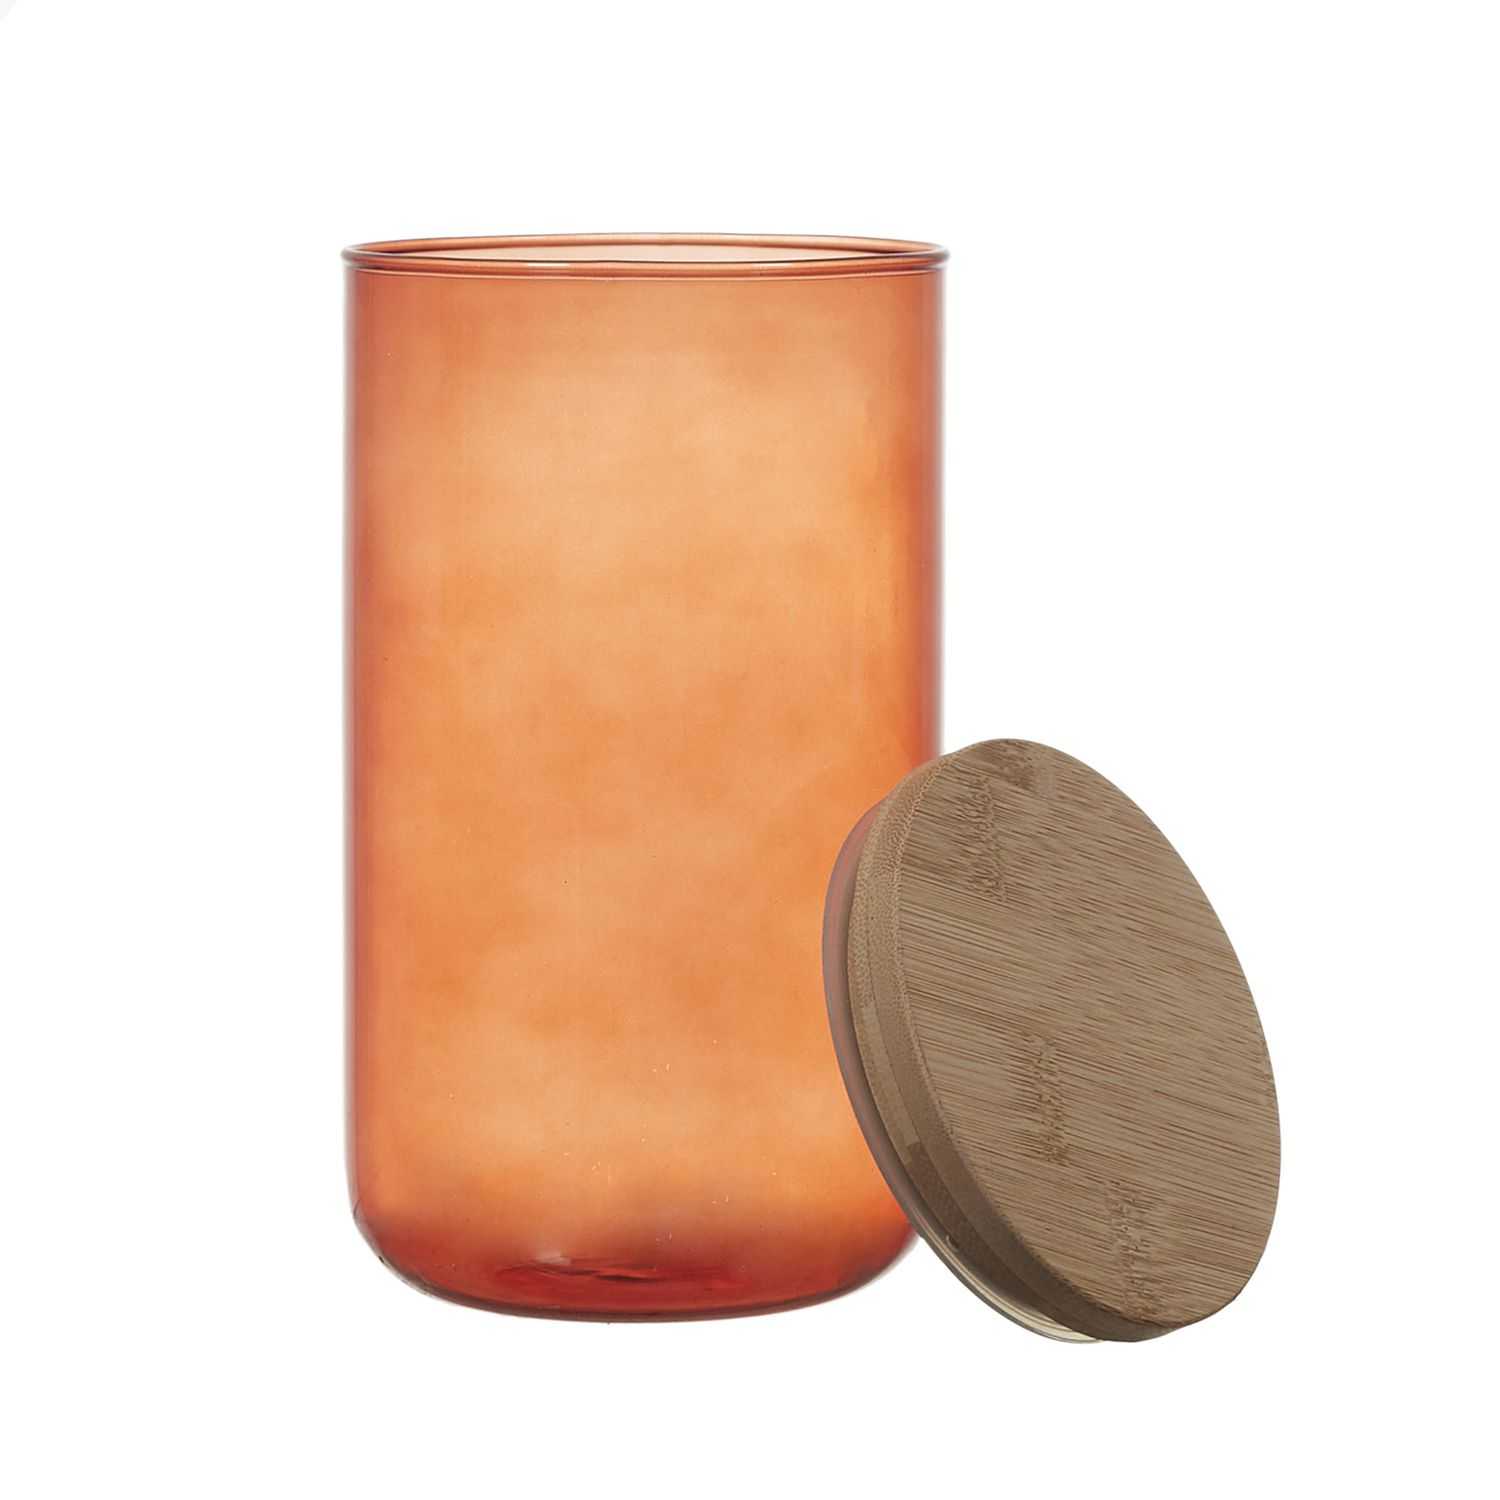 Glazen pot met bamboedeksel 1 liter